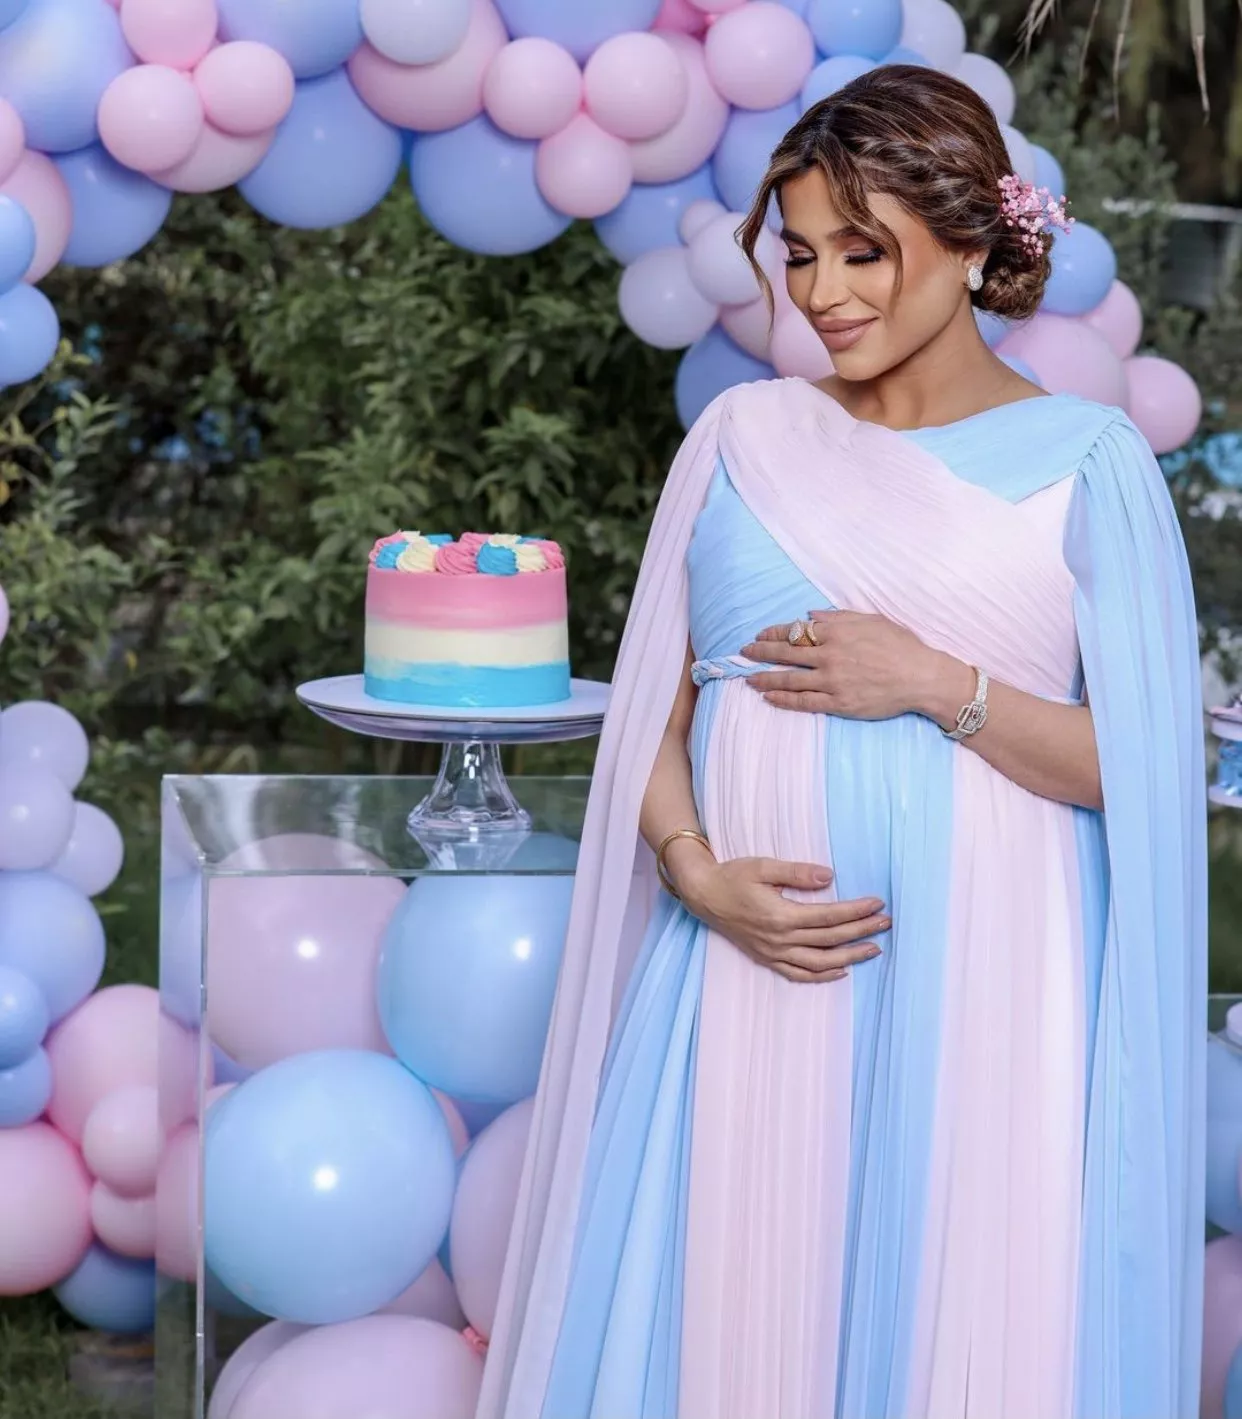 بالصور والفيديوهات، نهى نبيل تكشف عن جنس مولودها الرابع في يوم عيد الأم